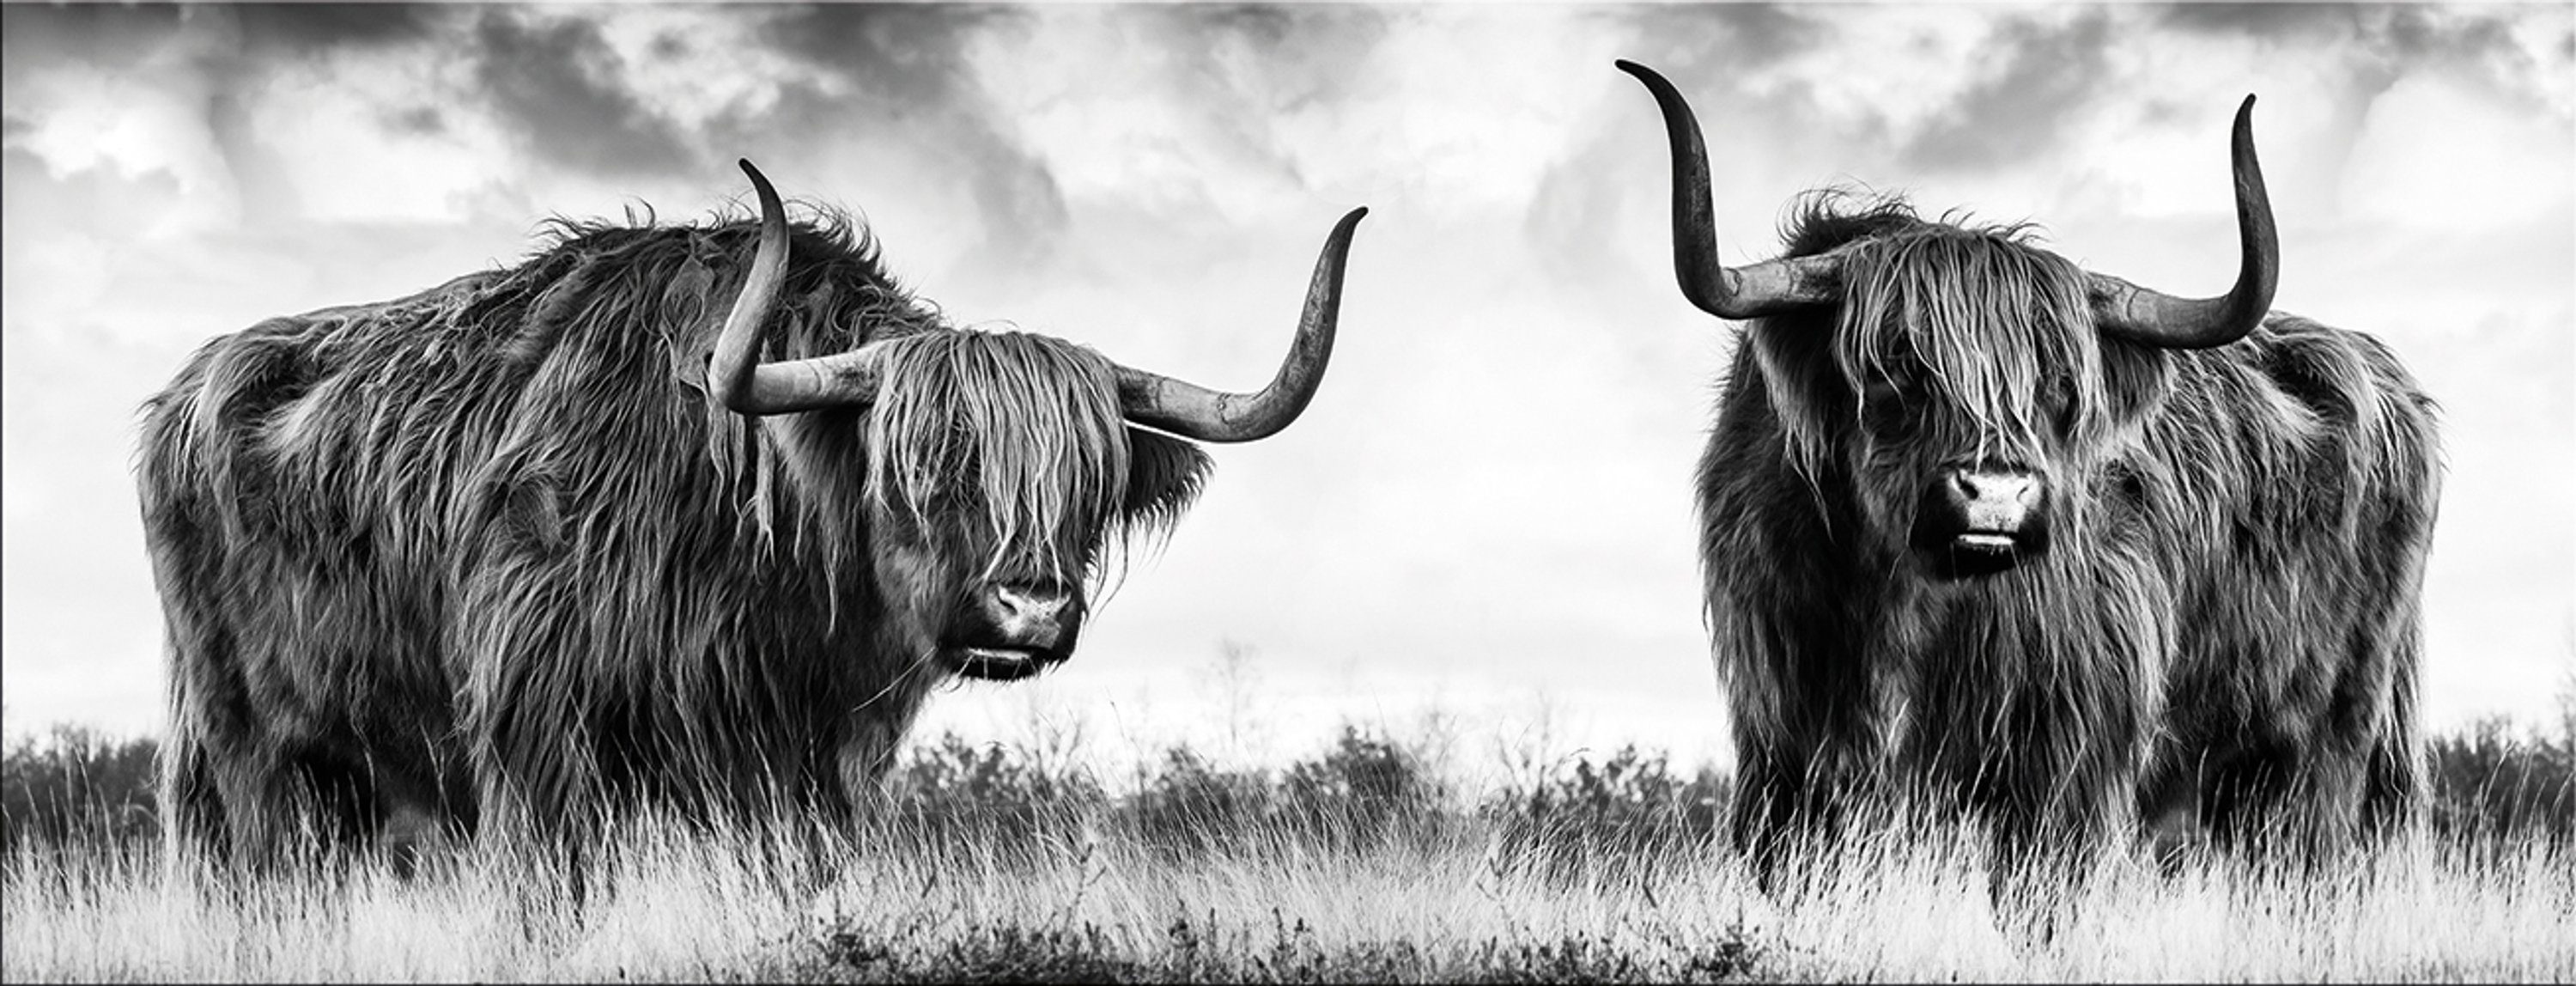 artissimo Glasbild Glasbild 80x30cm Bild schwarz-weiß Foto modern Hochlandrind Kuh, Tier-Fotografie: Kühe